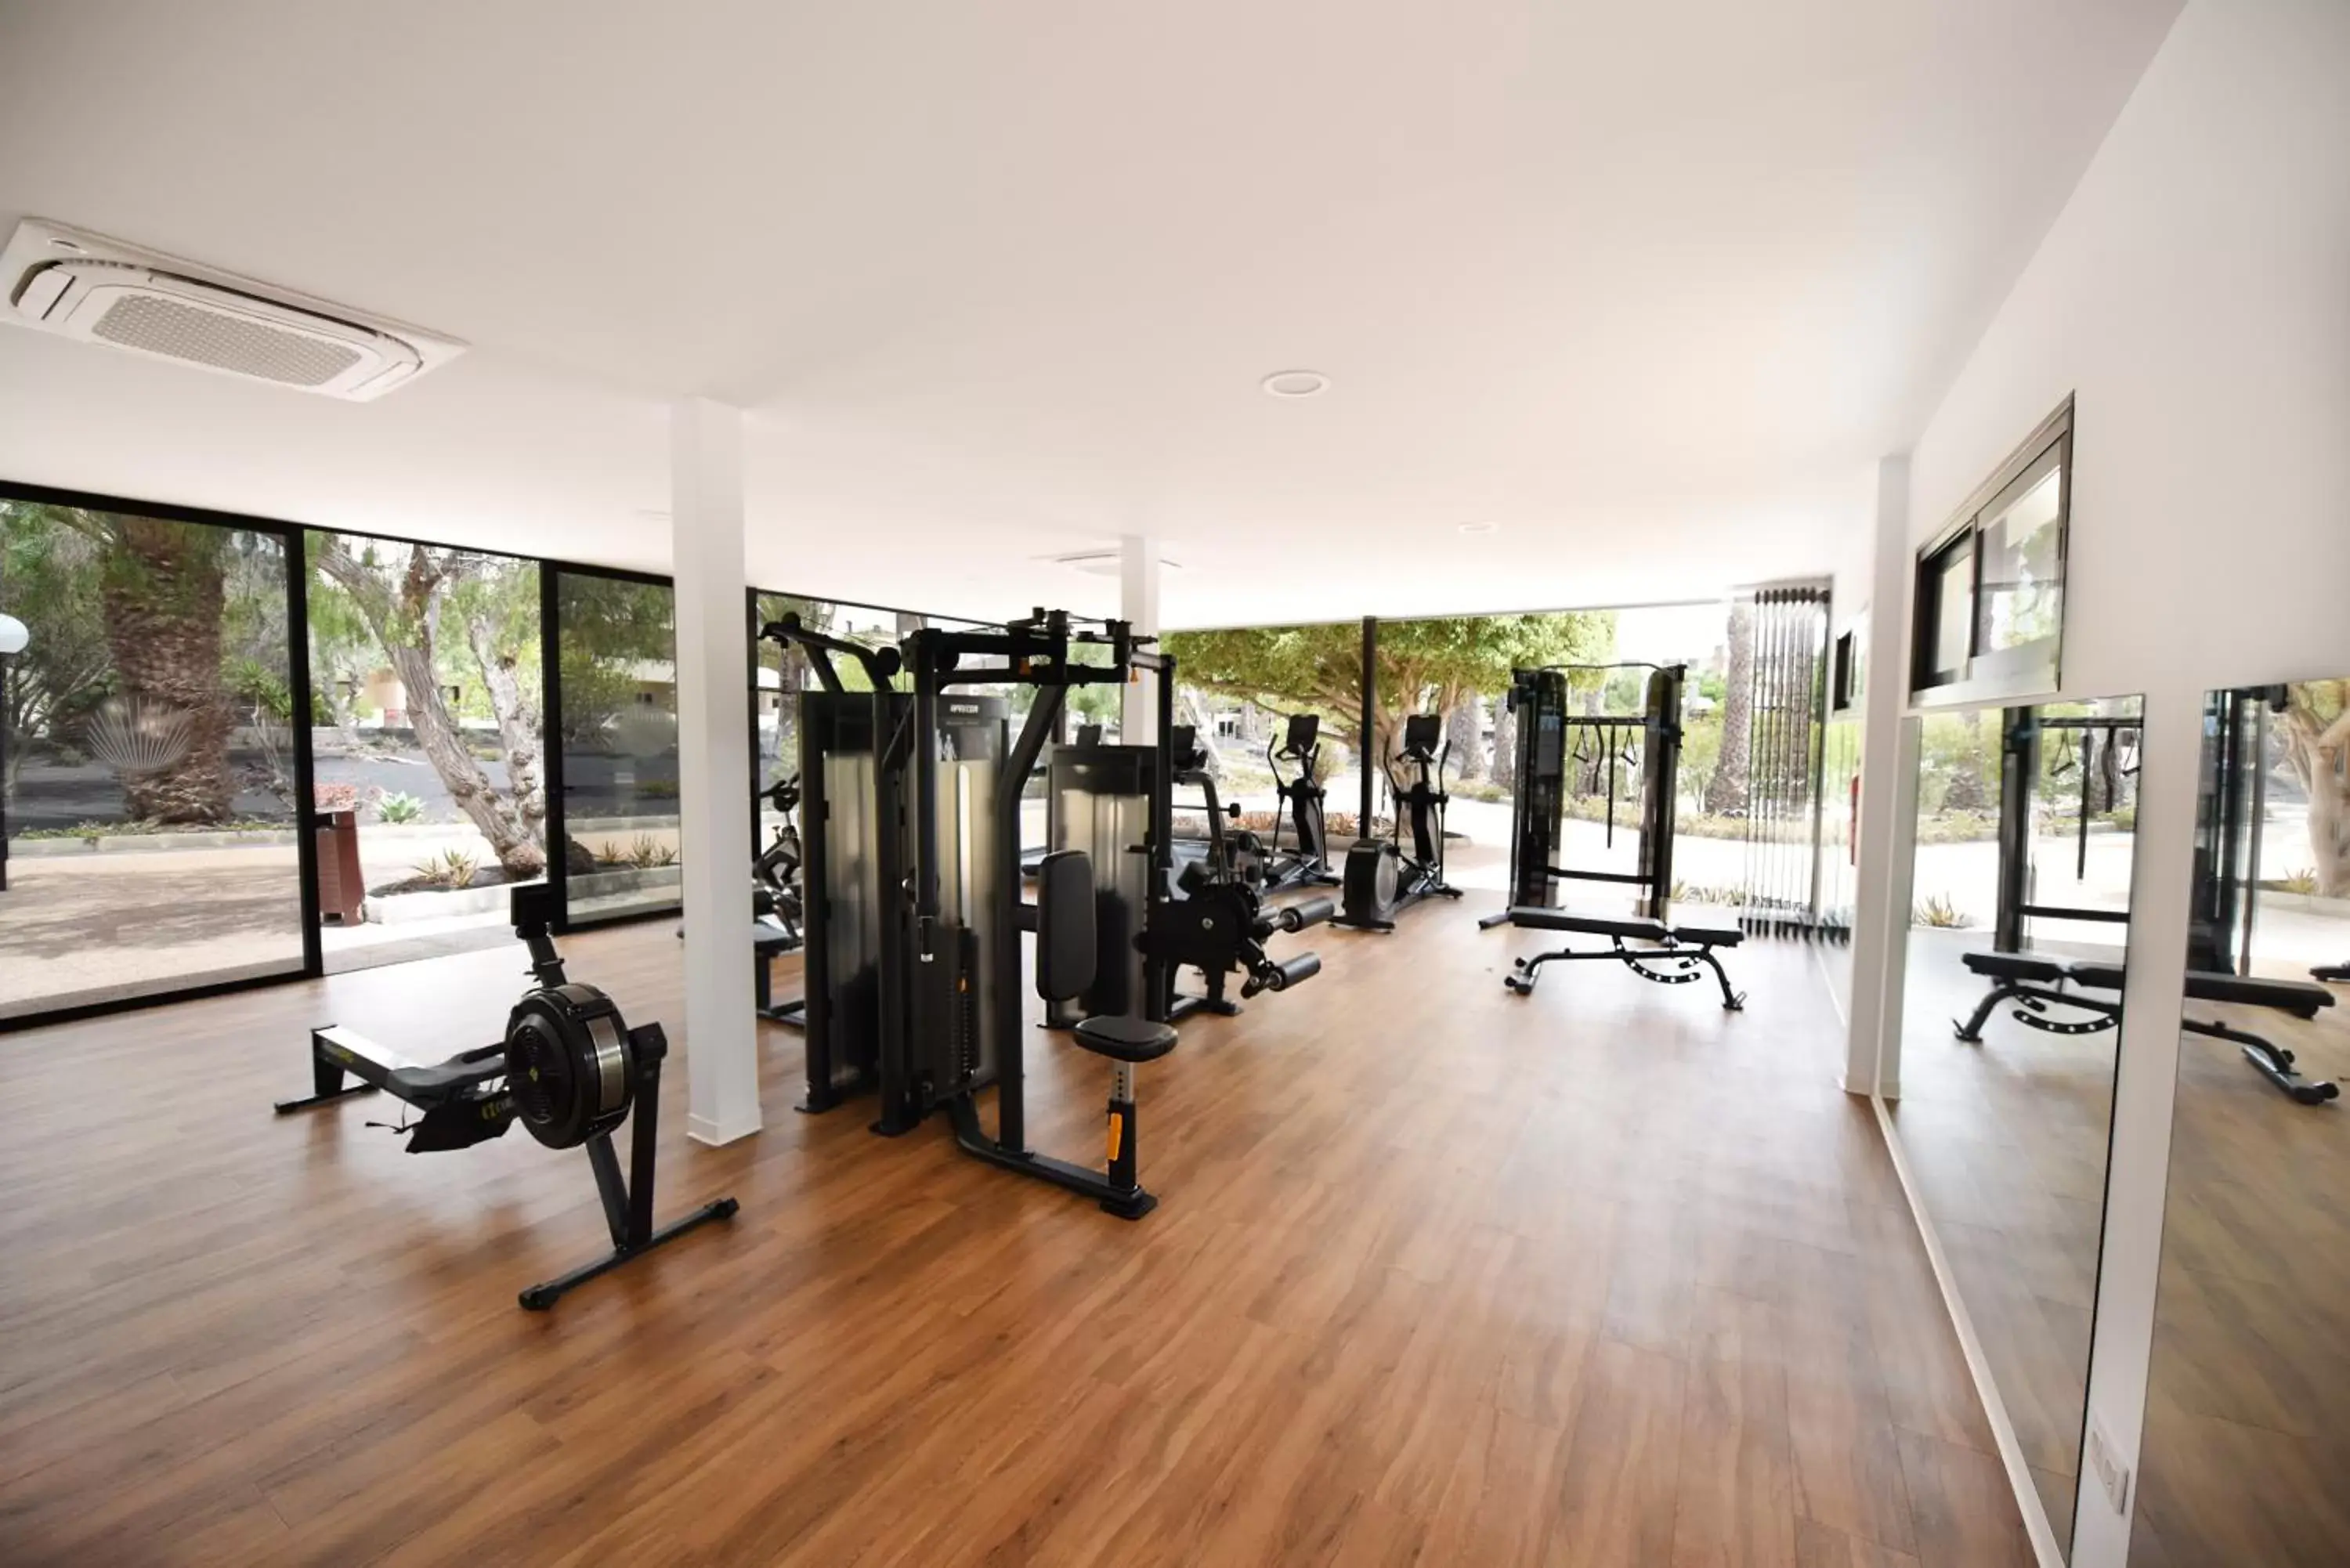 Fitness centre/facilities, Fitness Center/Facilities in Los Zocos Impressive Lanzarote